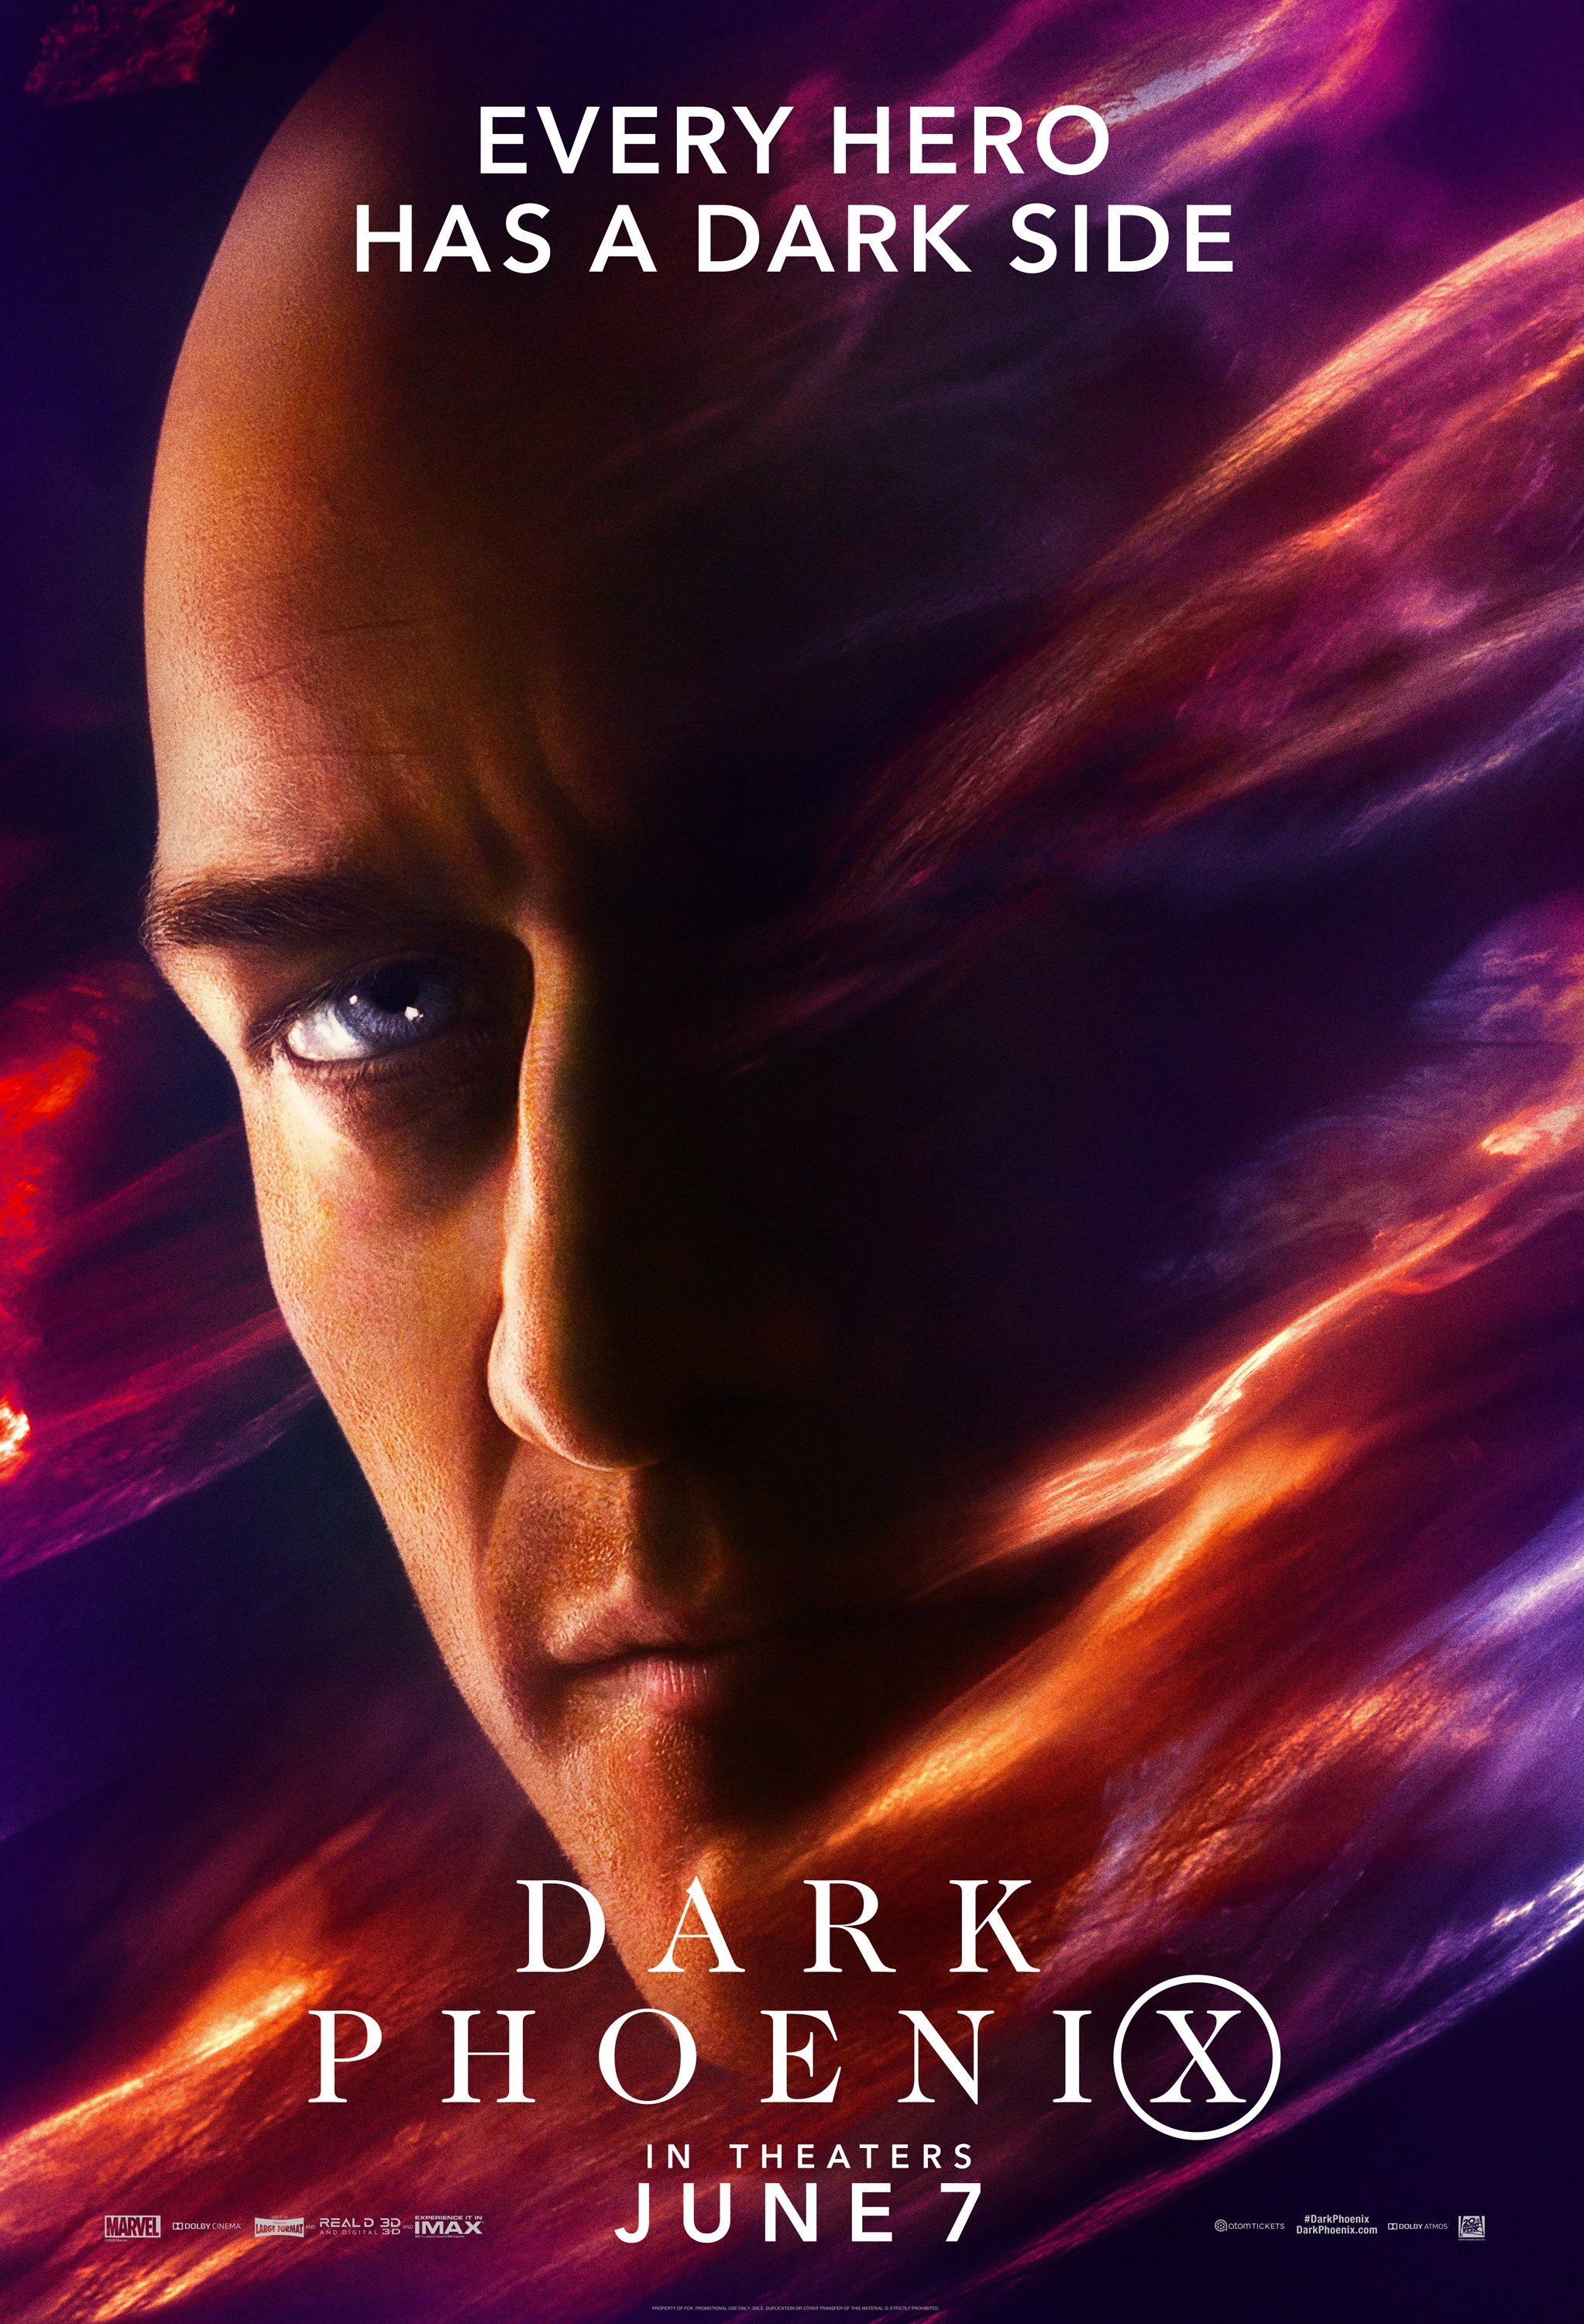 Professor X Jean Grey Dark Phoenix Poster Wallpapers